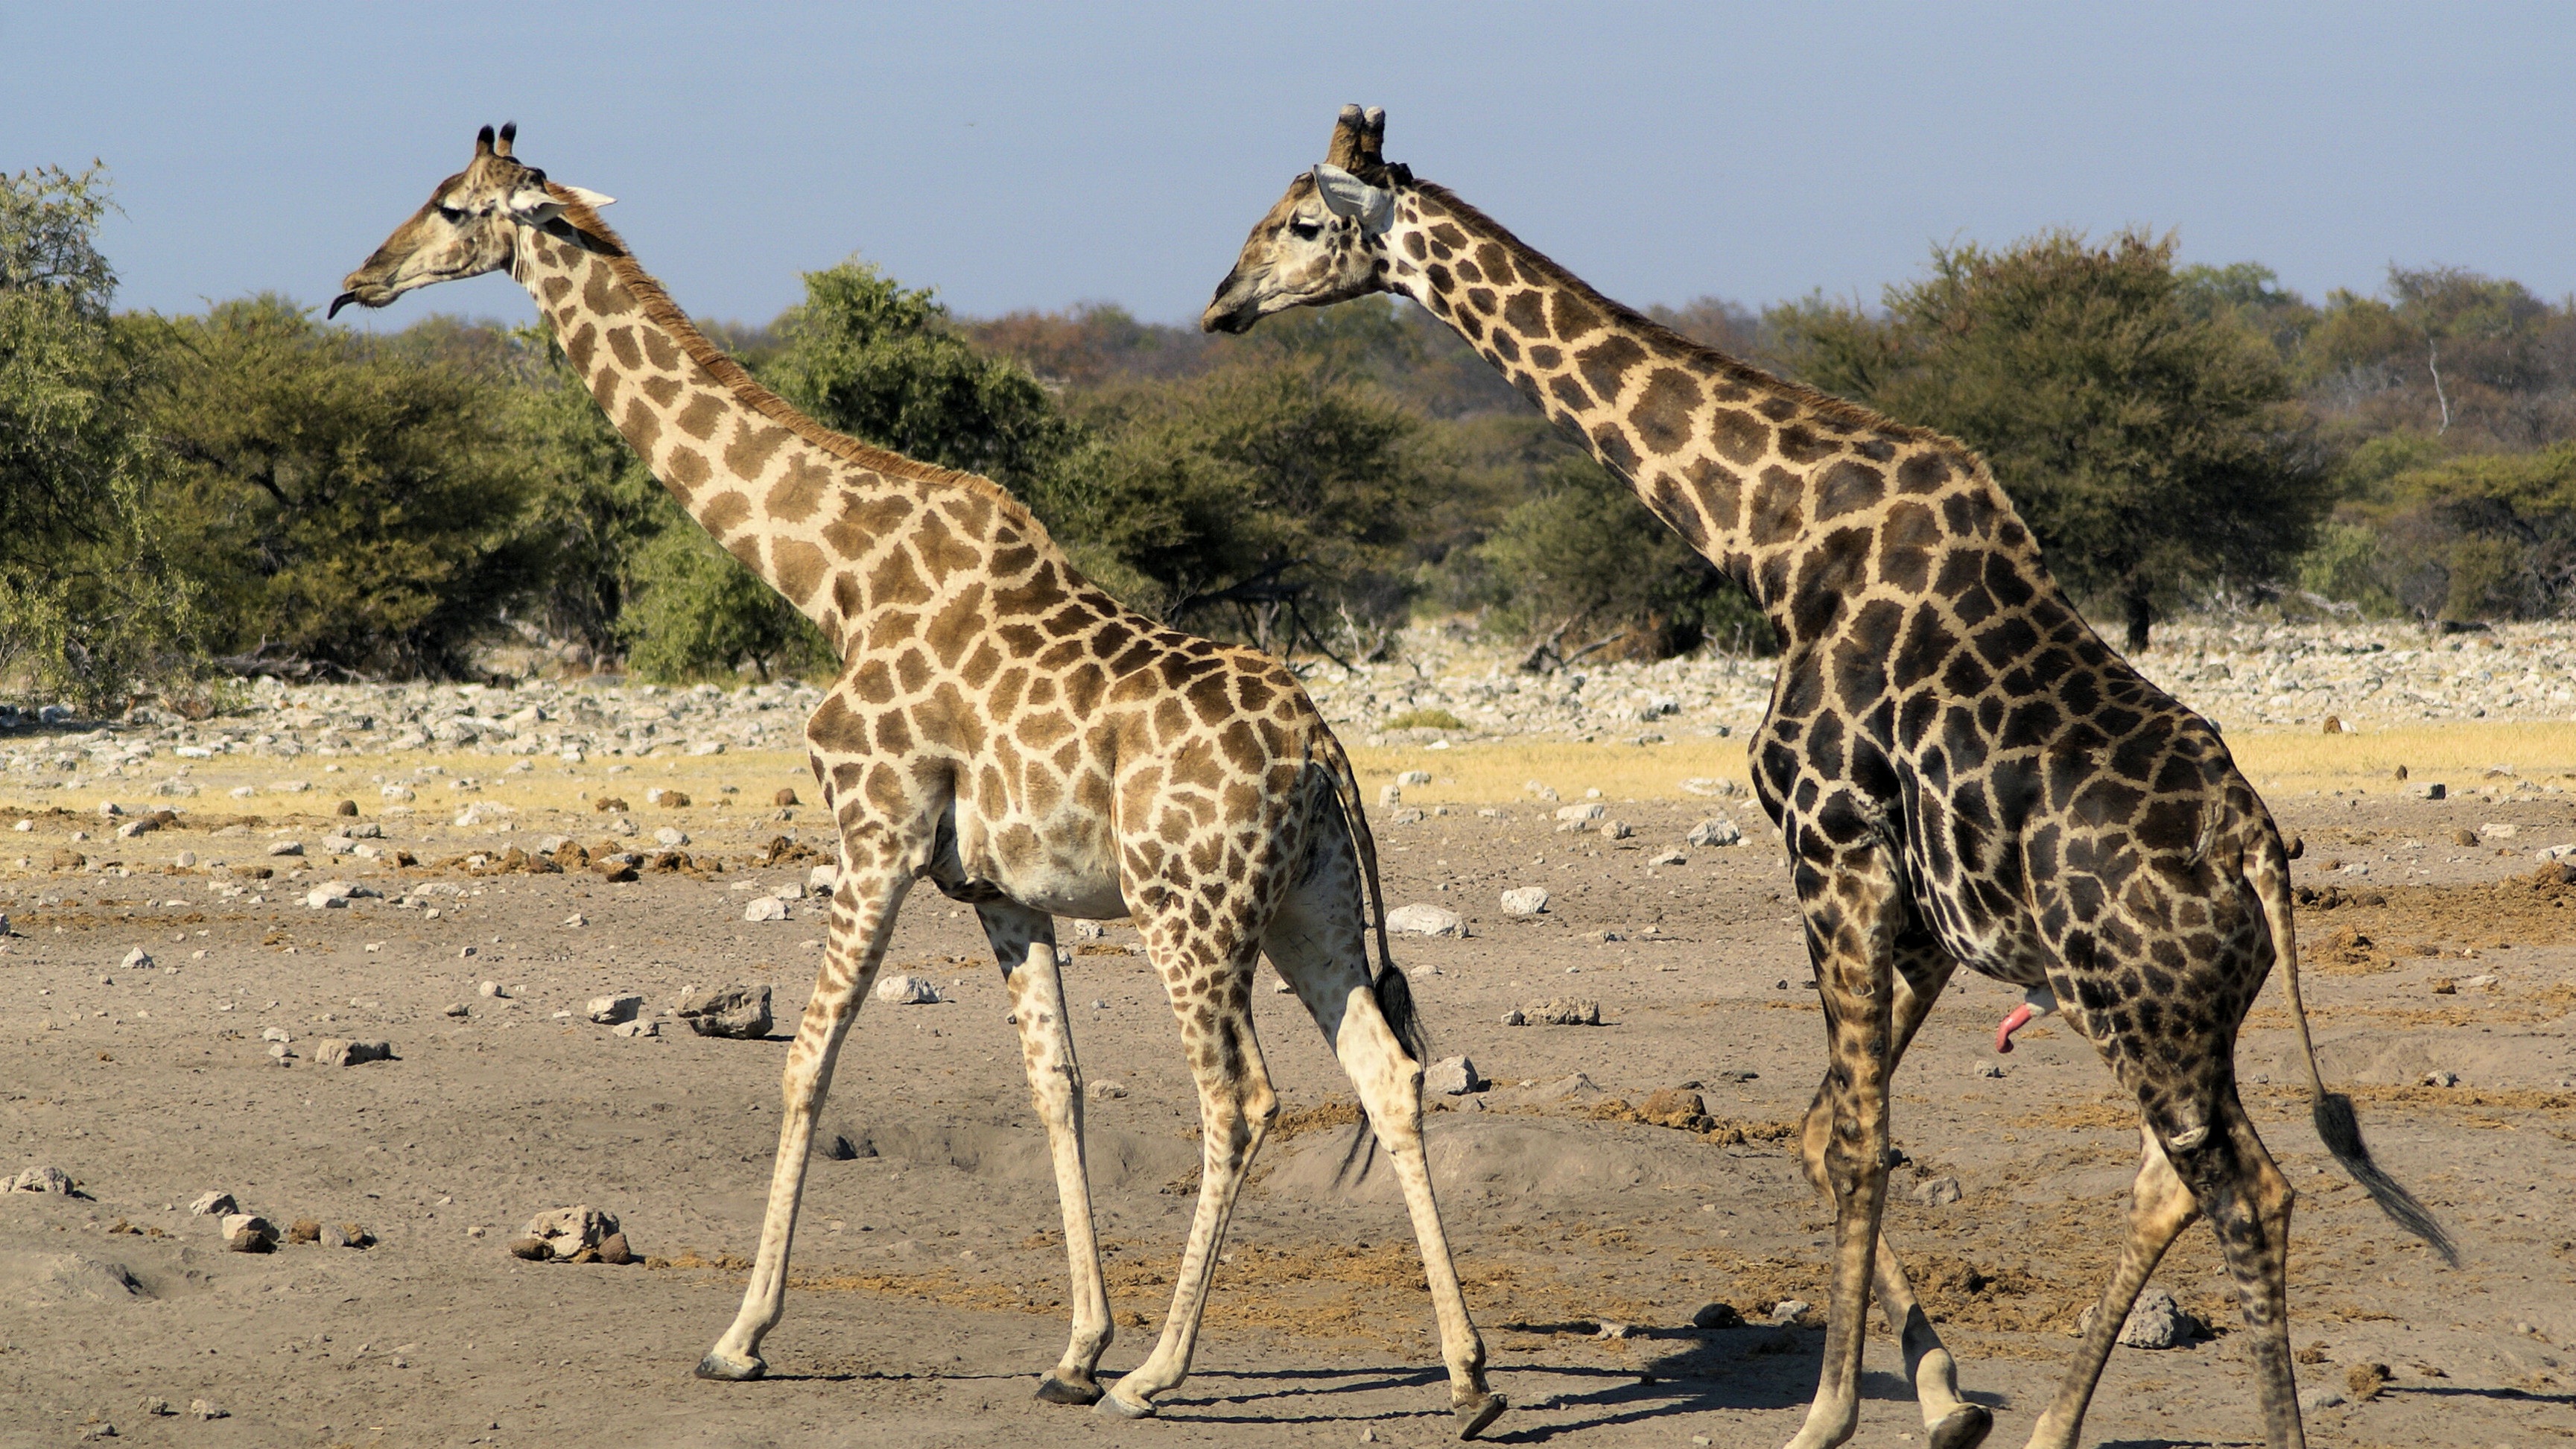 Giraffe Population in Decline